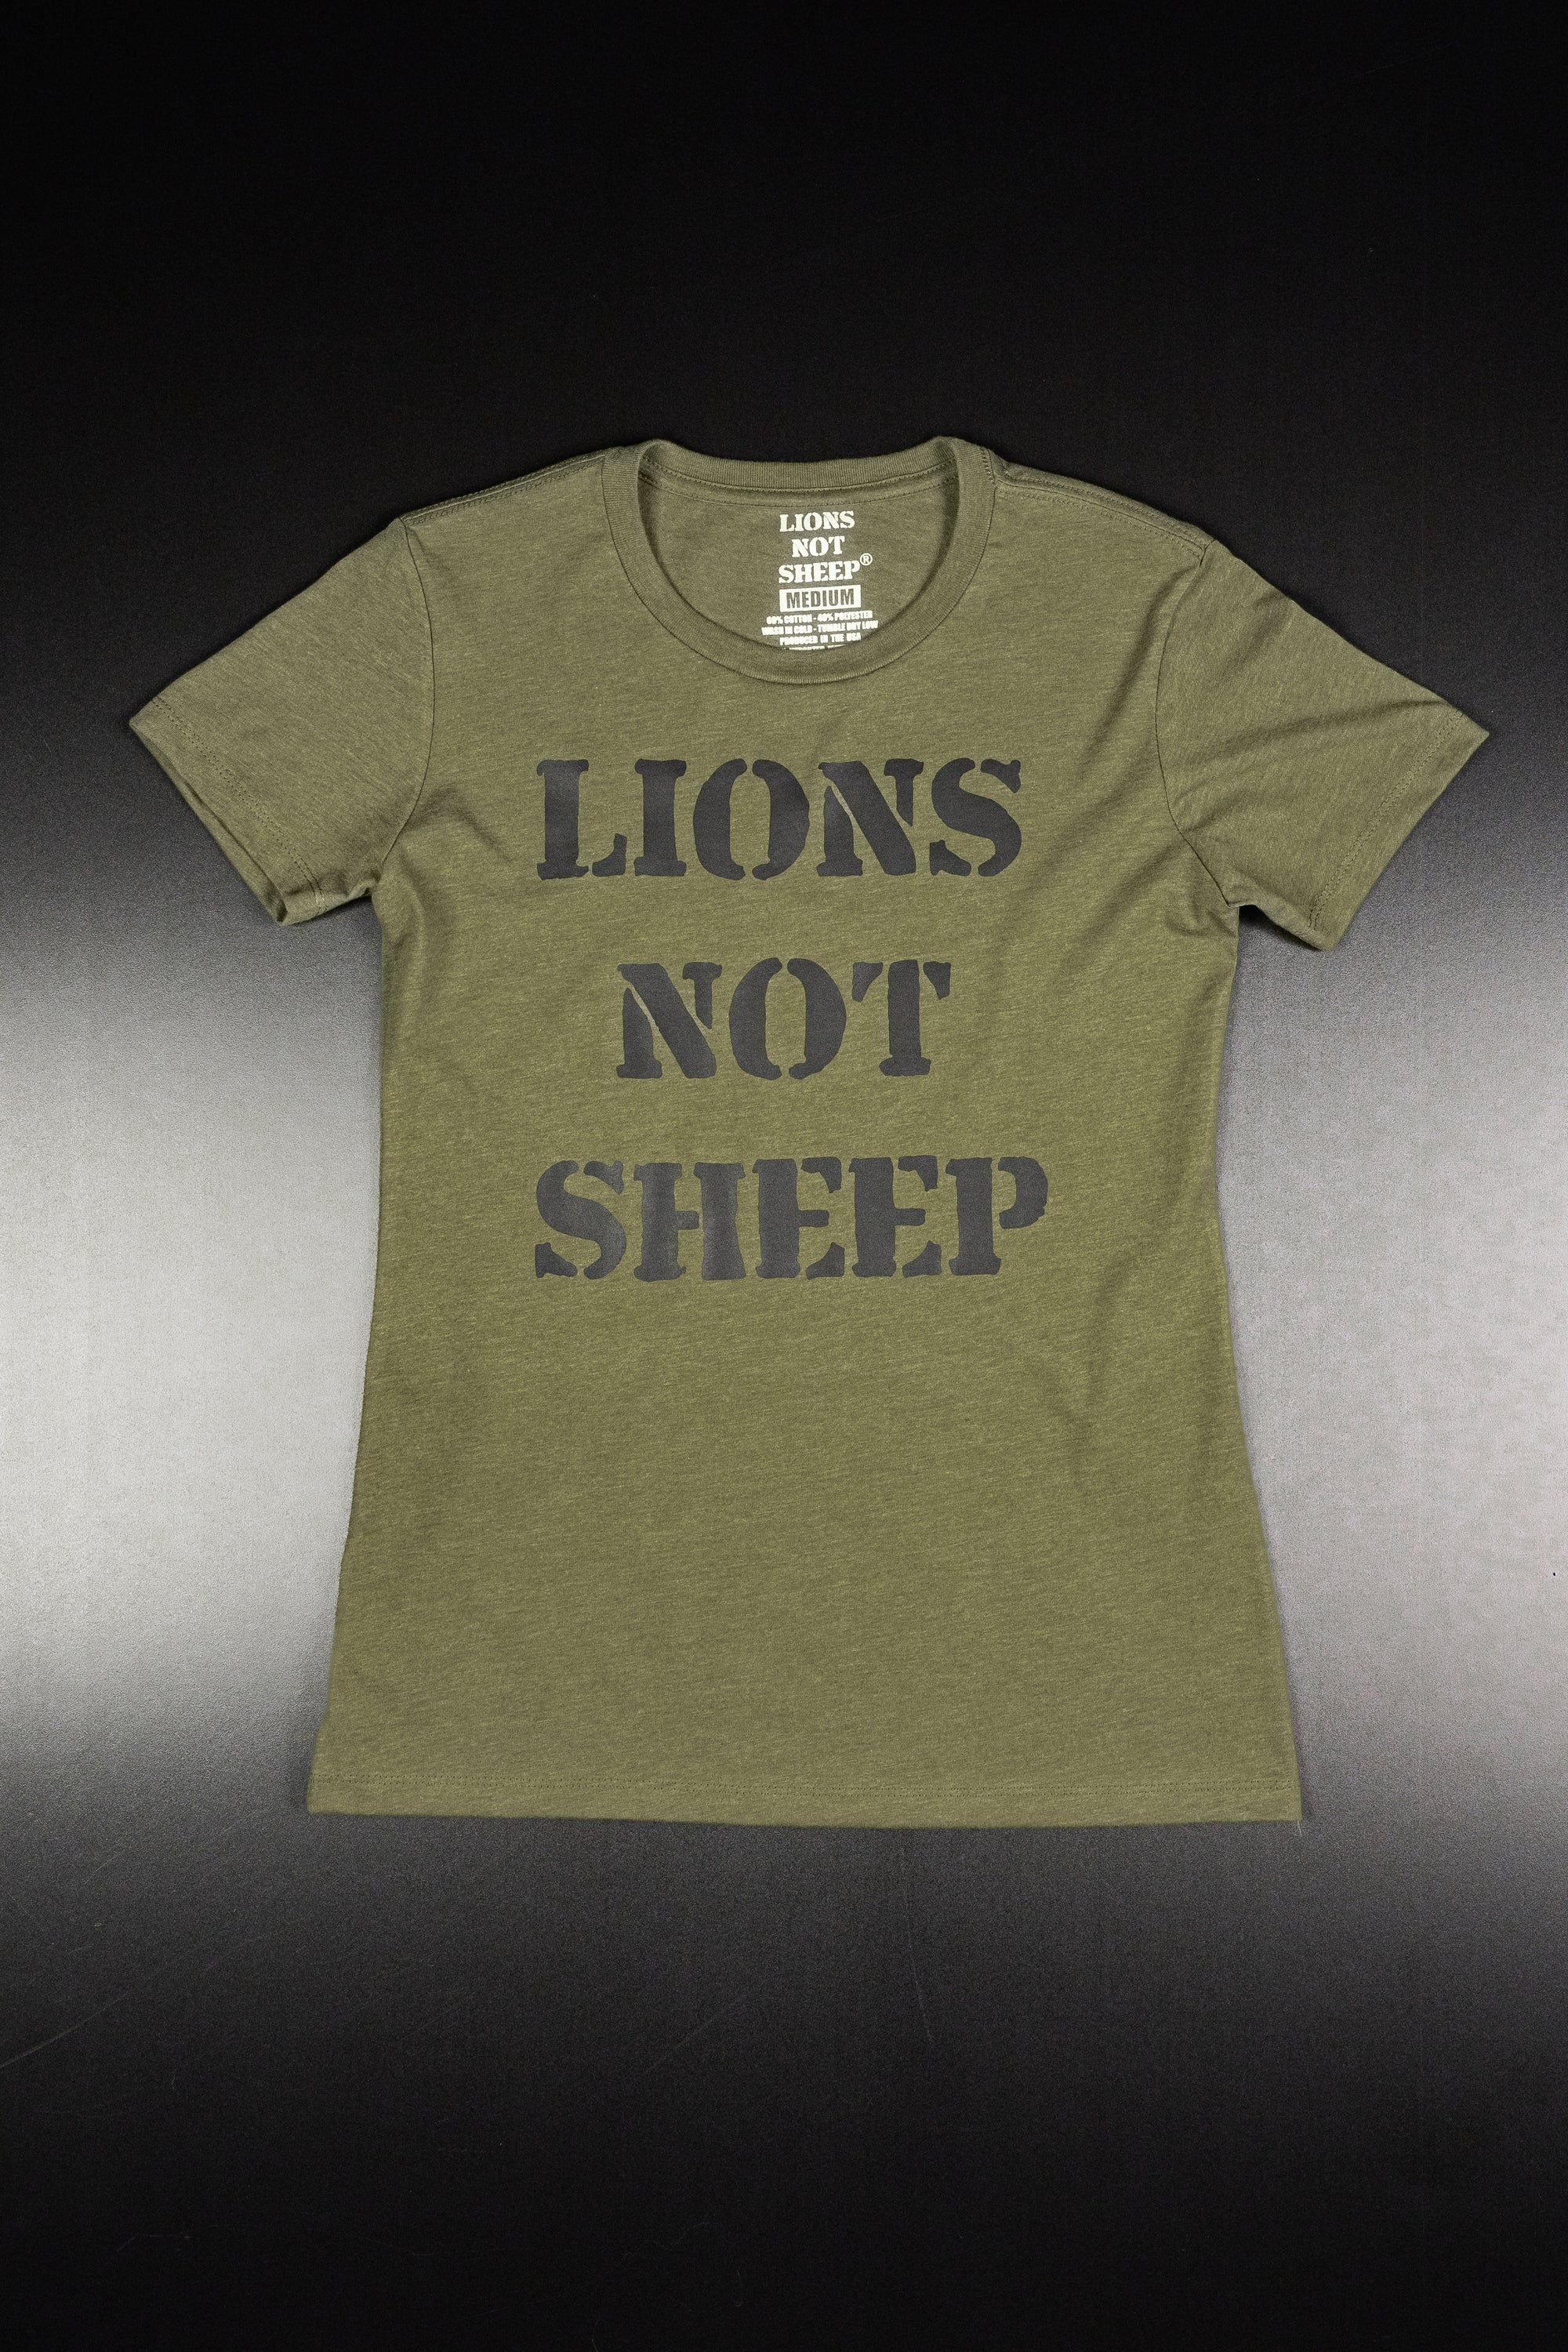 LIONS NOT SHEEP OG Women's Tee - Lions Not Sheep ®